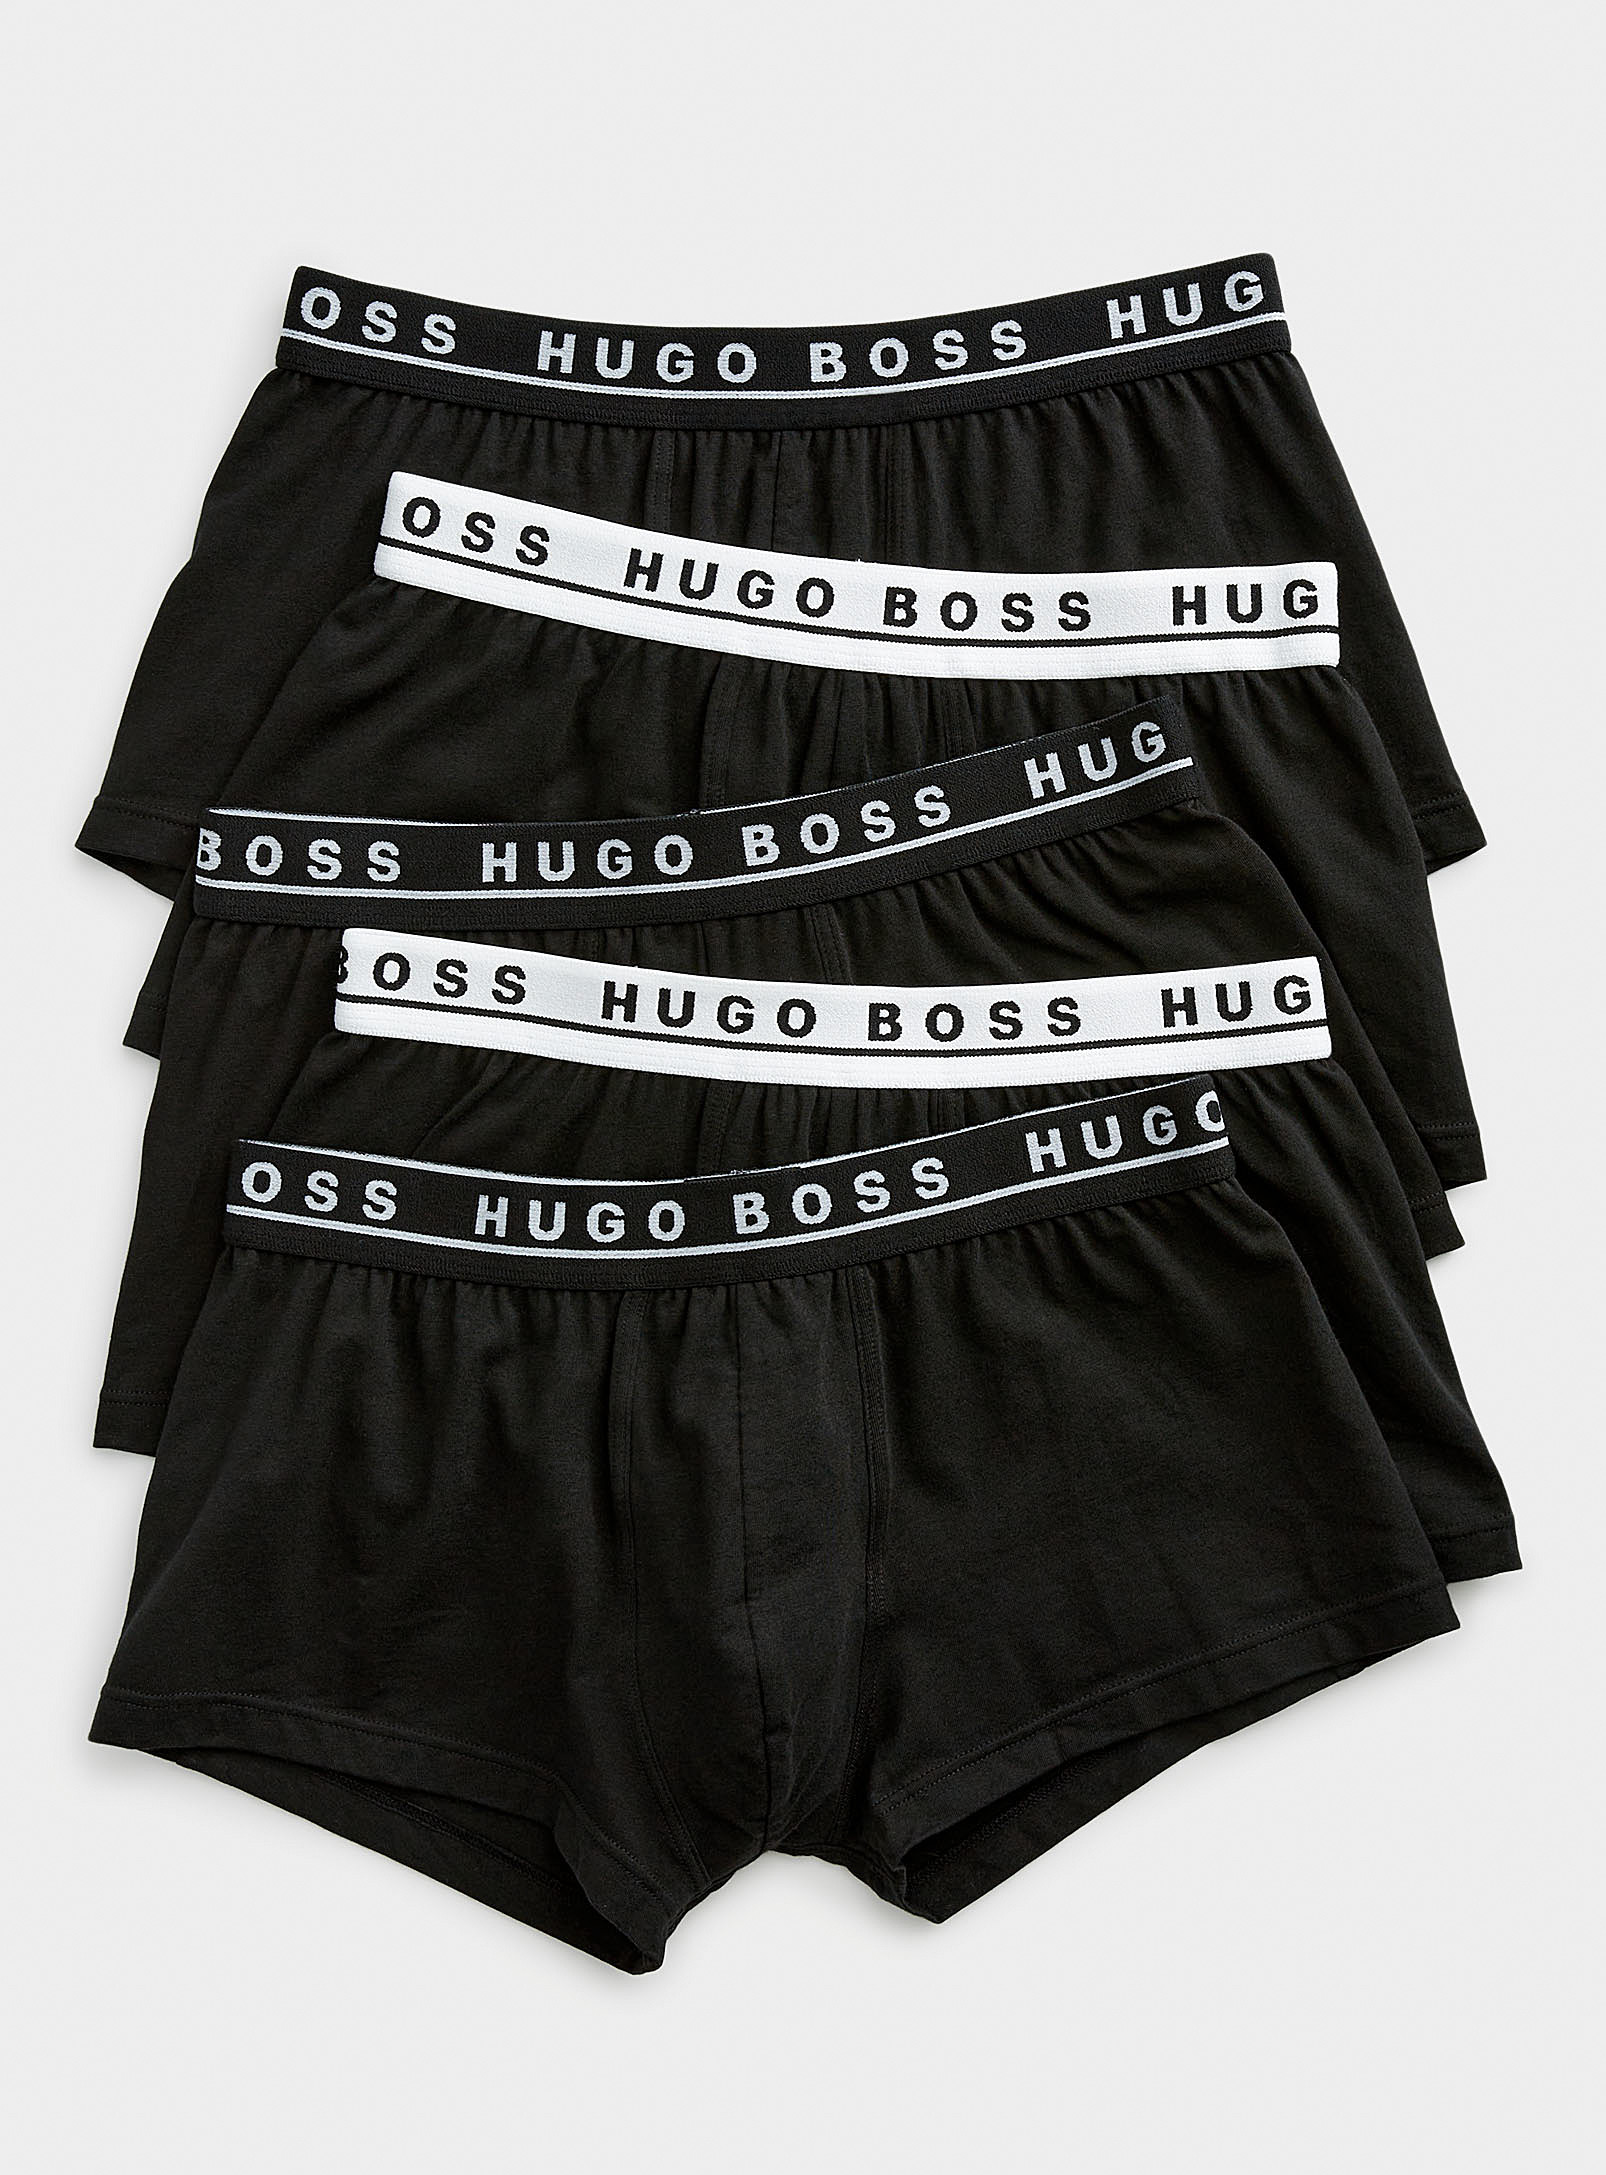 BOSS - Men's Black-and-white trunks 5-pack